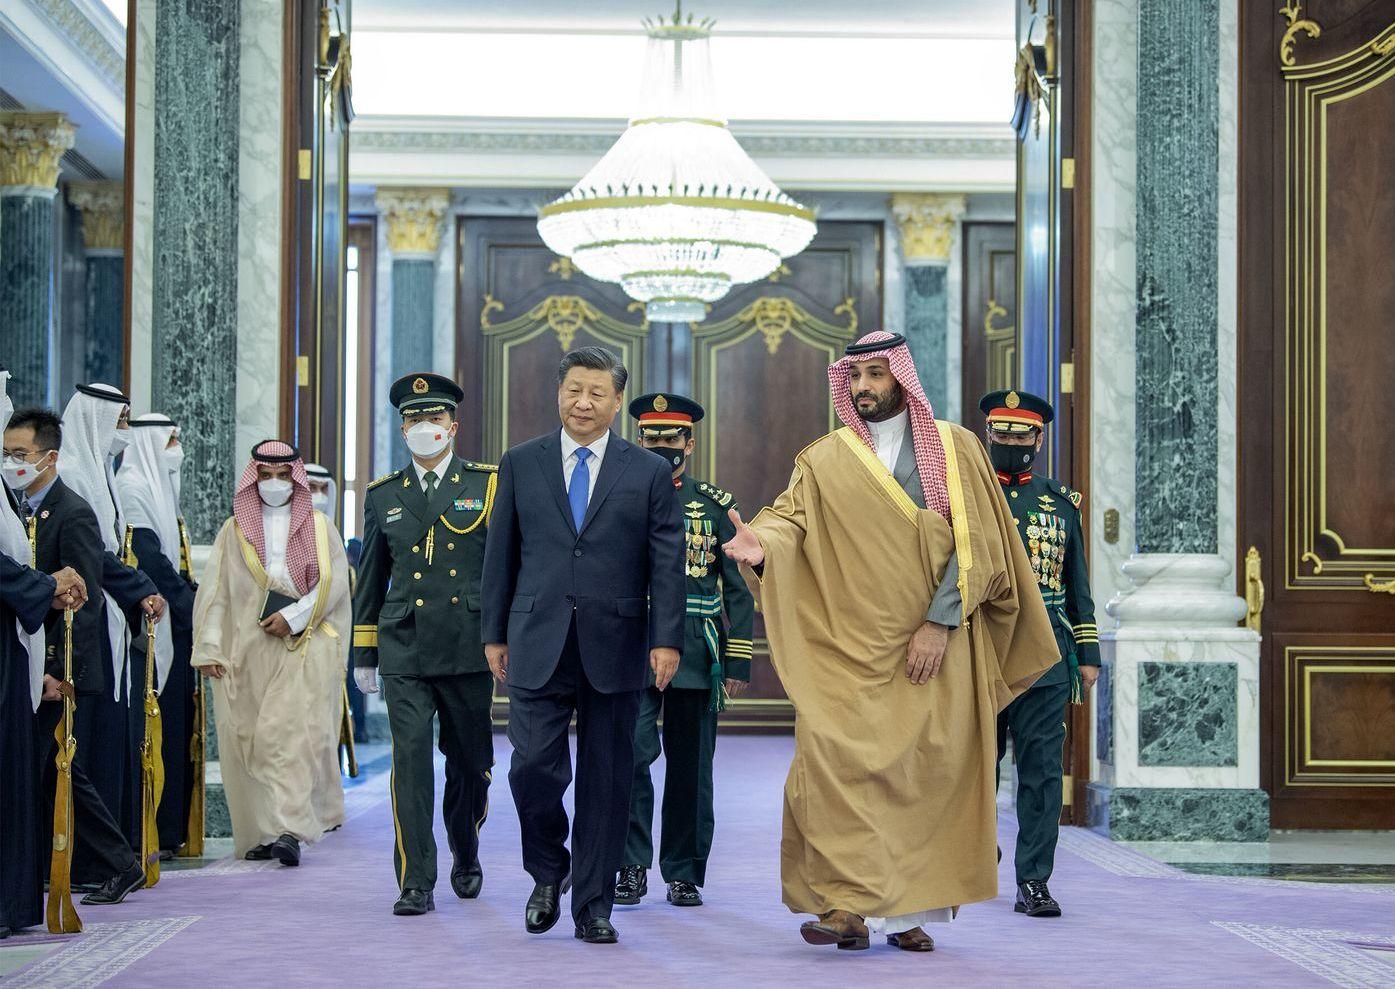 نام مقصر اصلی سفر رئیس‌جمهور چین به عربستان اعلام شد: حسن روحانی!